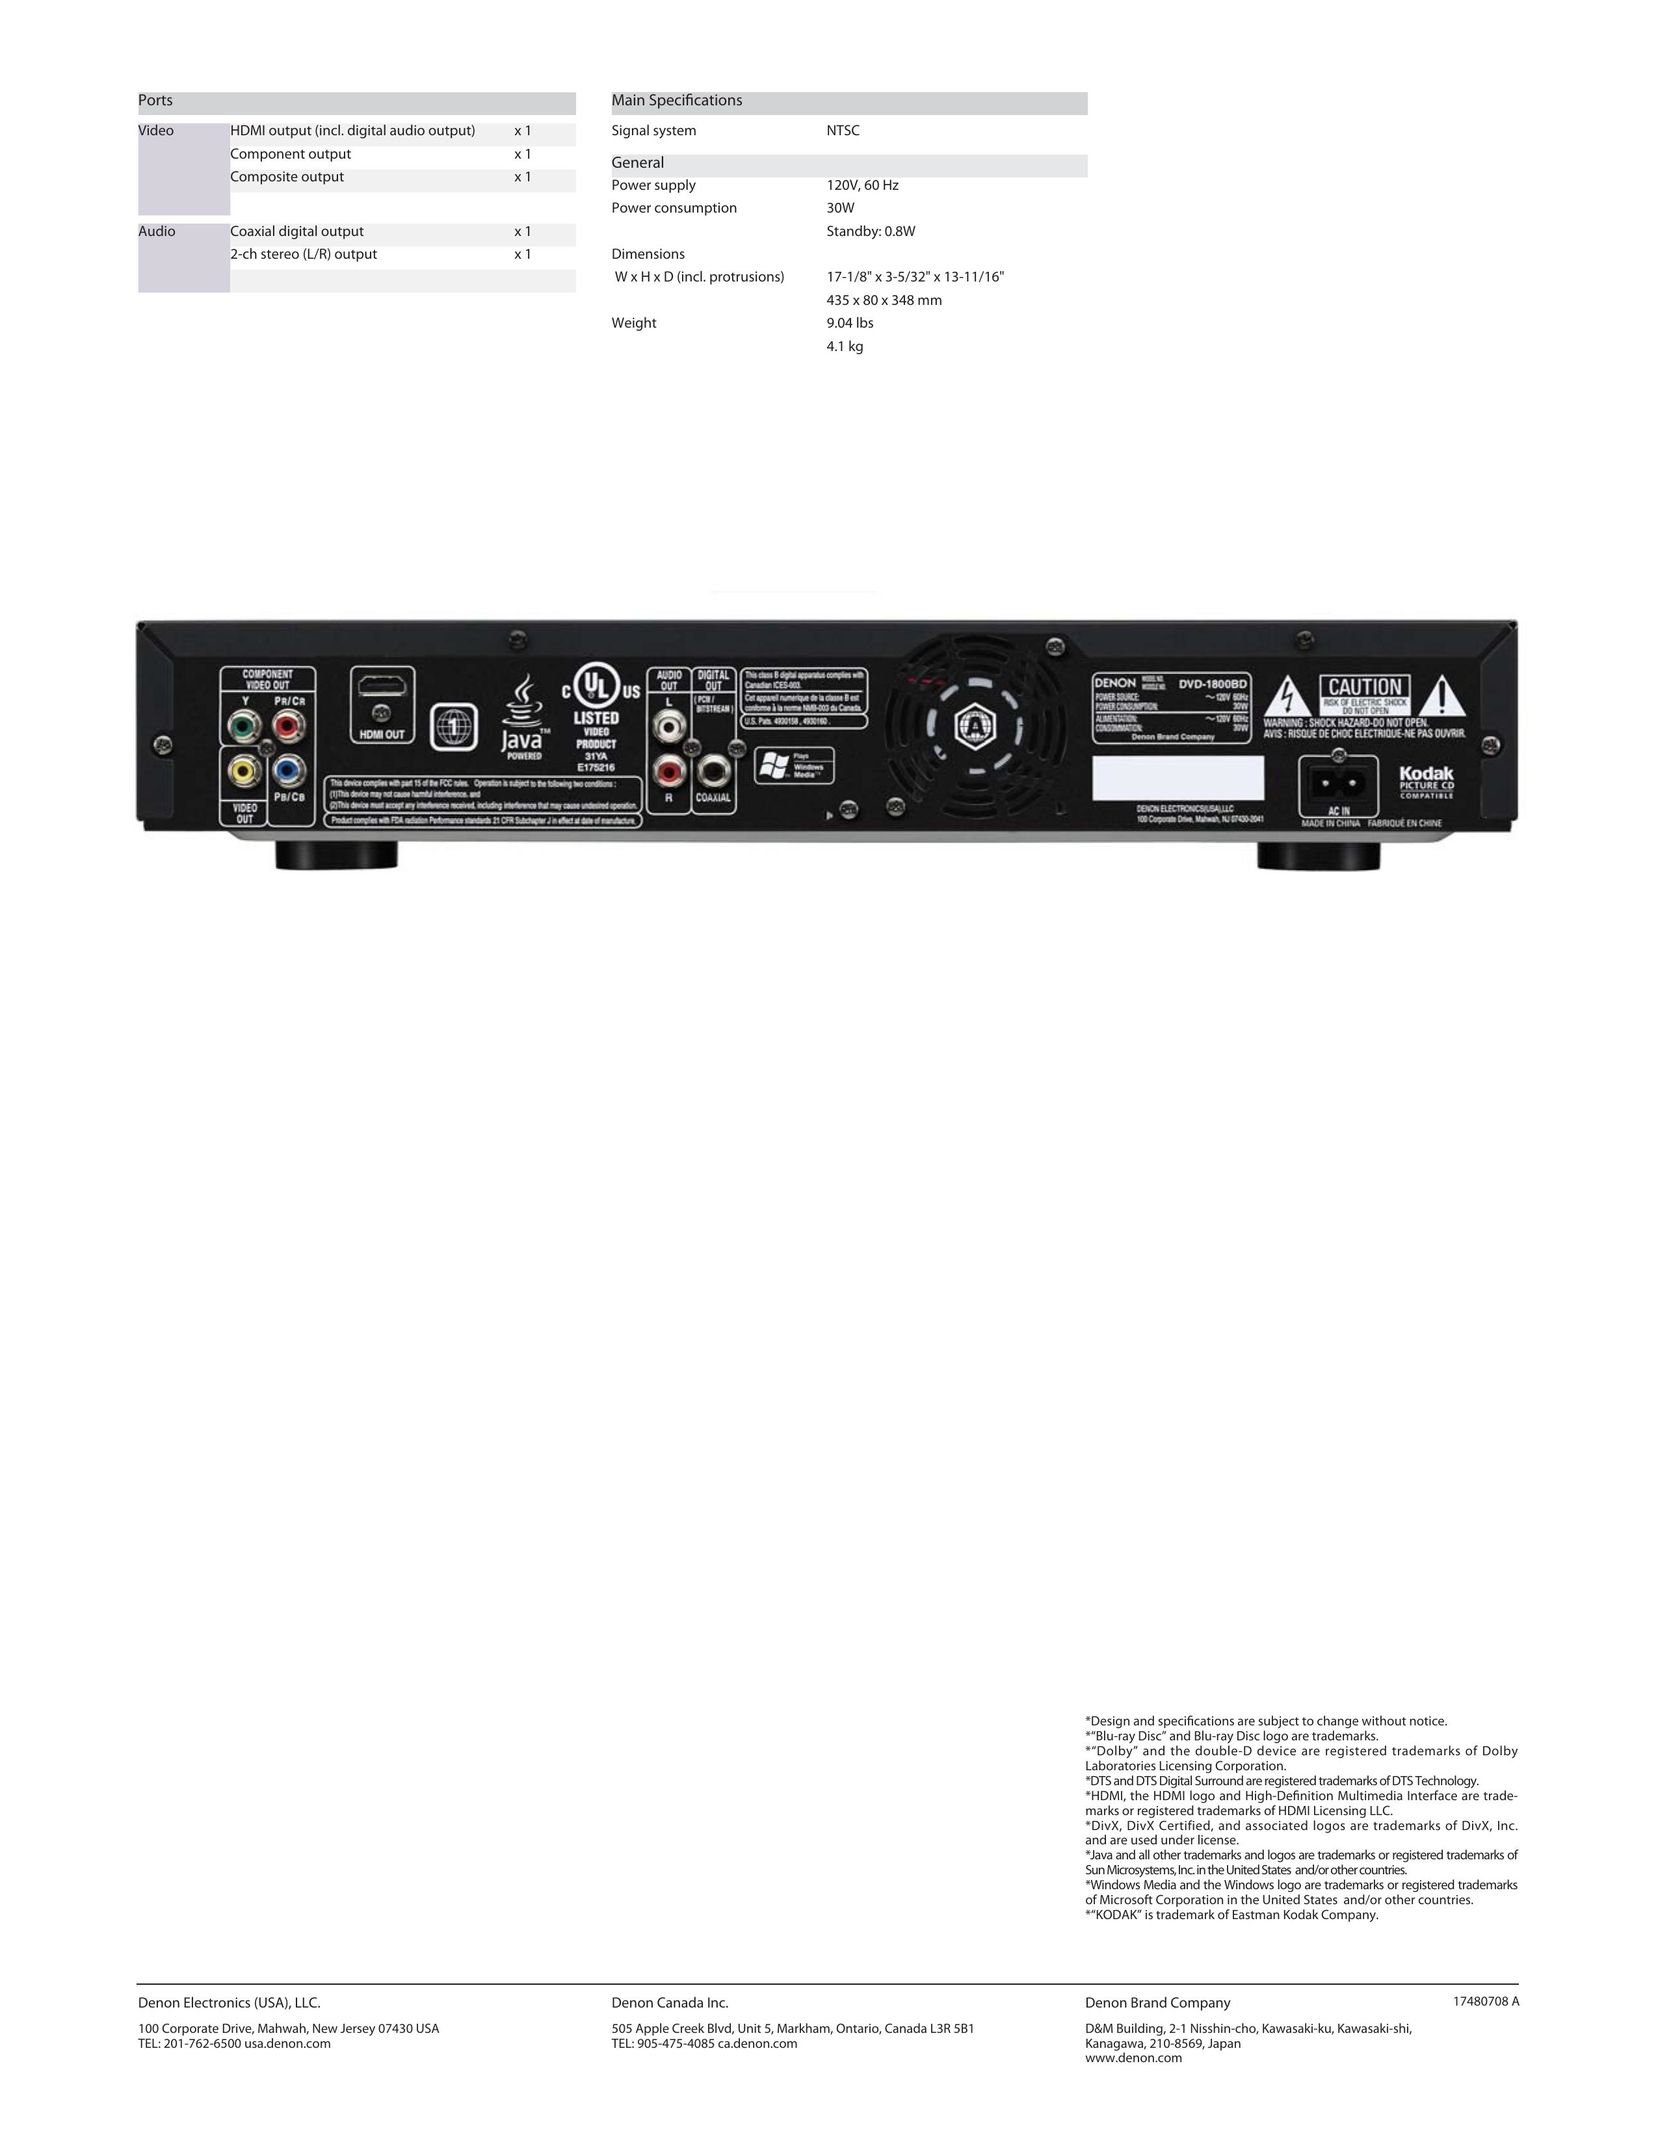 Denon DVD-1800BD Blu-ray Player User Manual (Page 2)